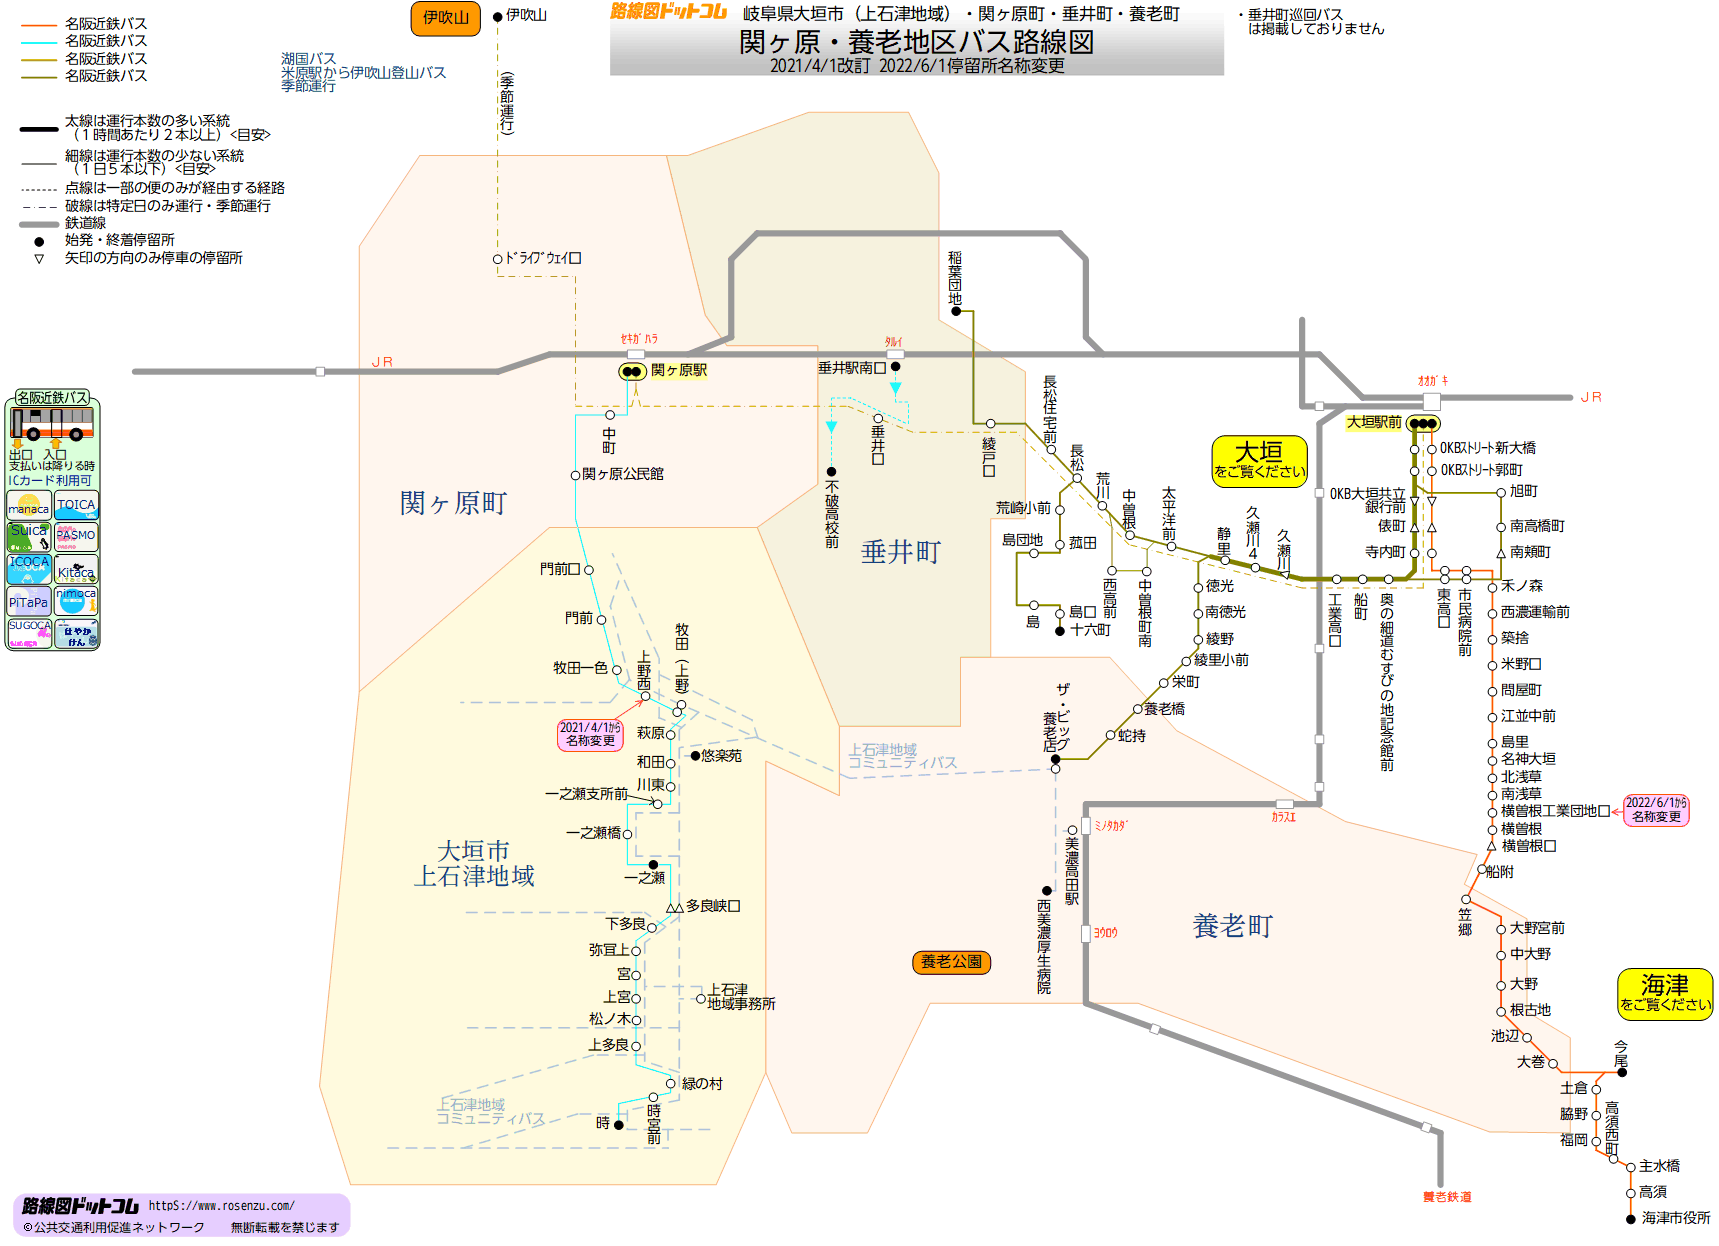 路線図ドットコム 岐阜県 関ヶ原 養老地区バス路線図